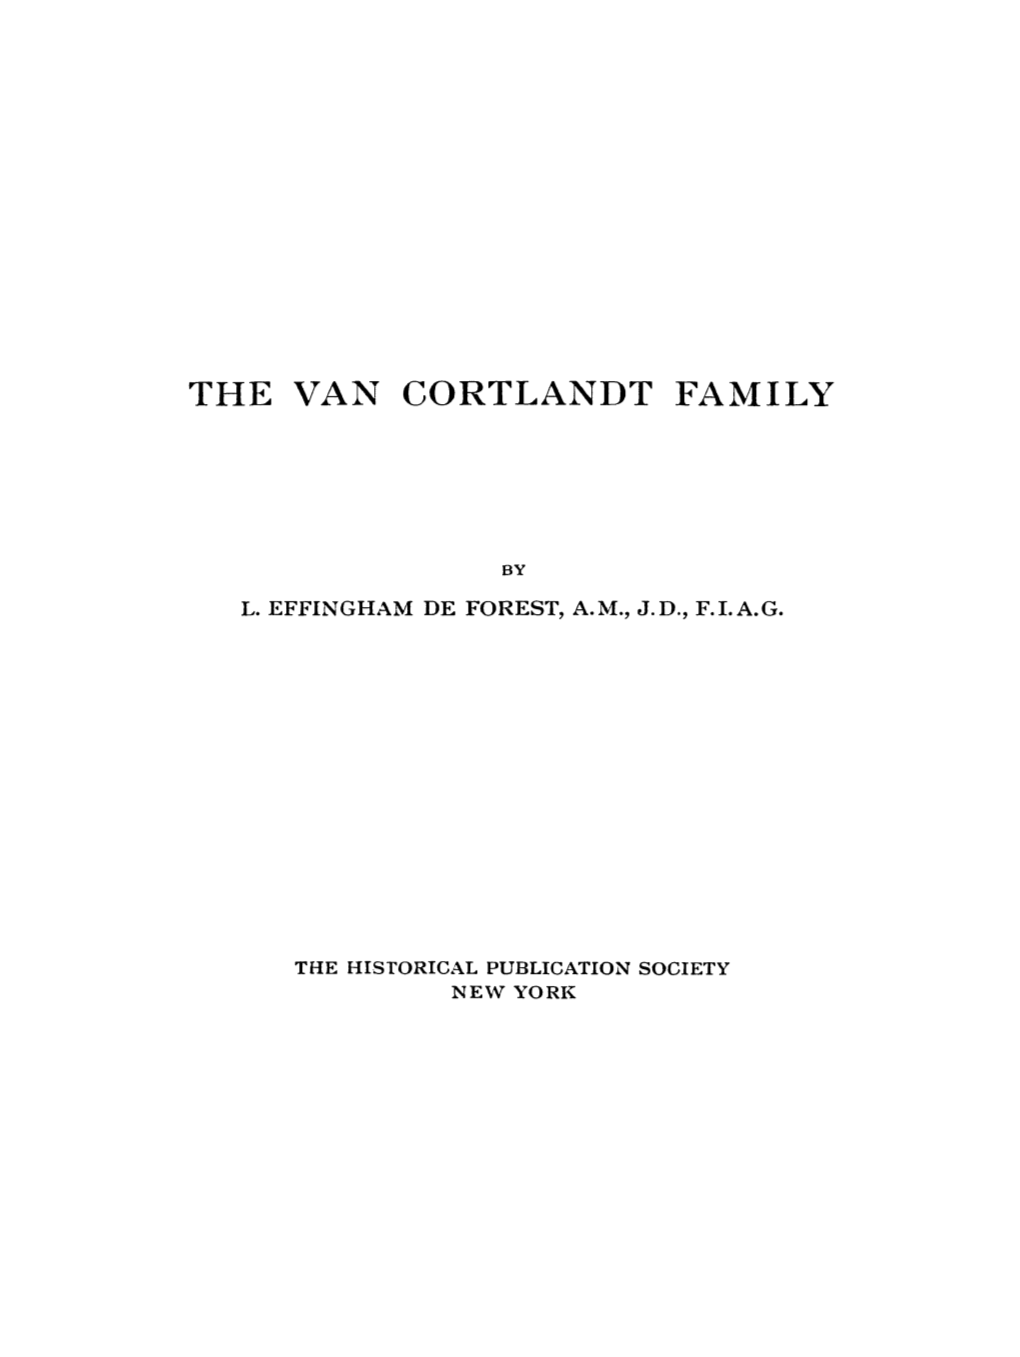 The Van Cortlandt Family